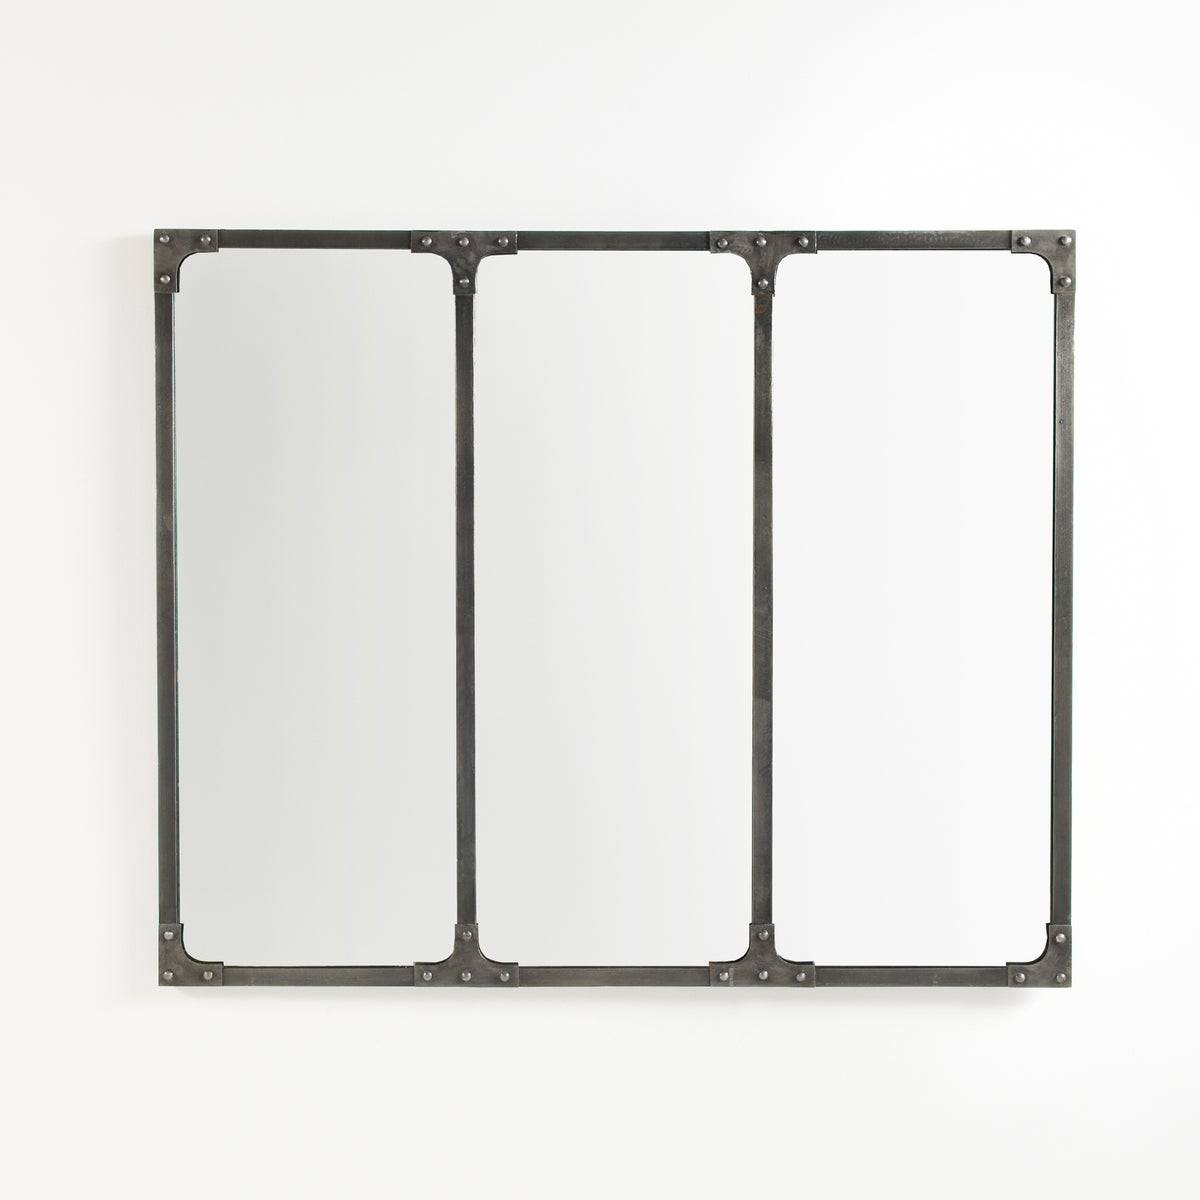 Espejo rectangular con marco metálico modelo Lenaig de La Redoute